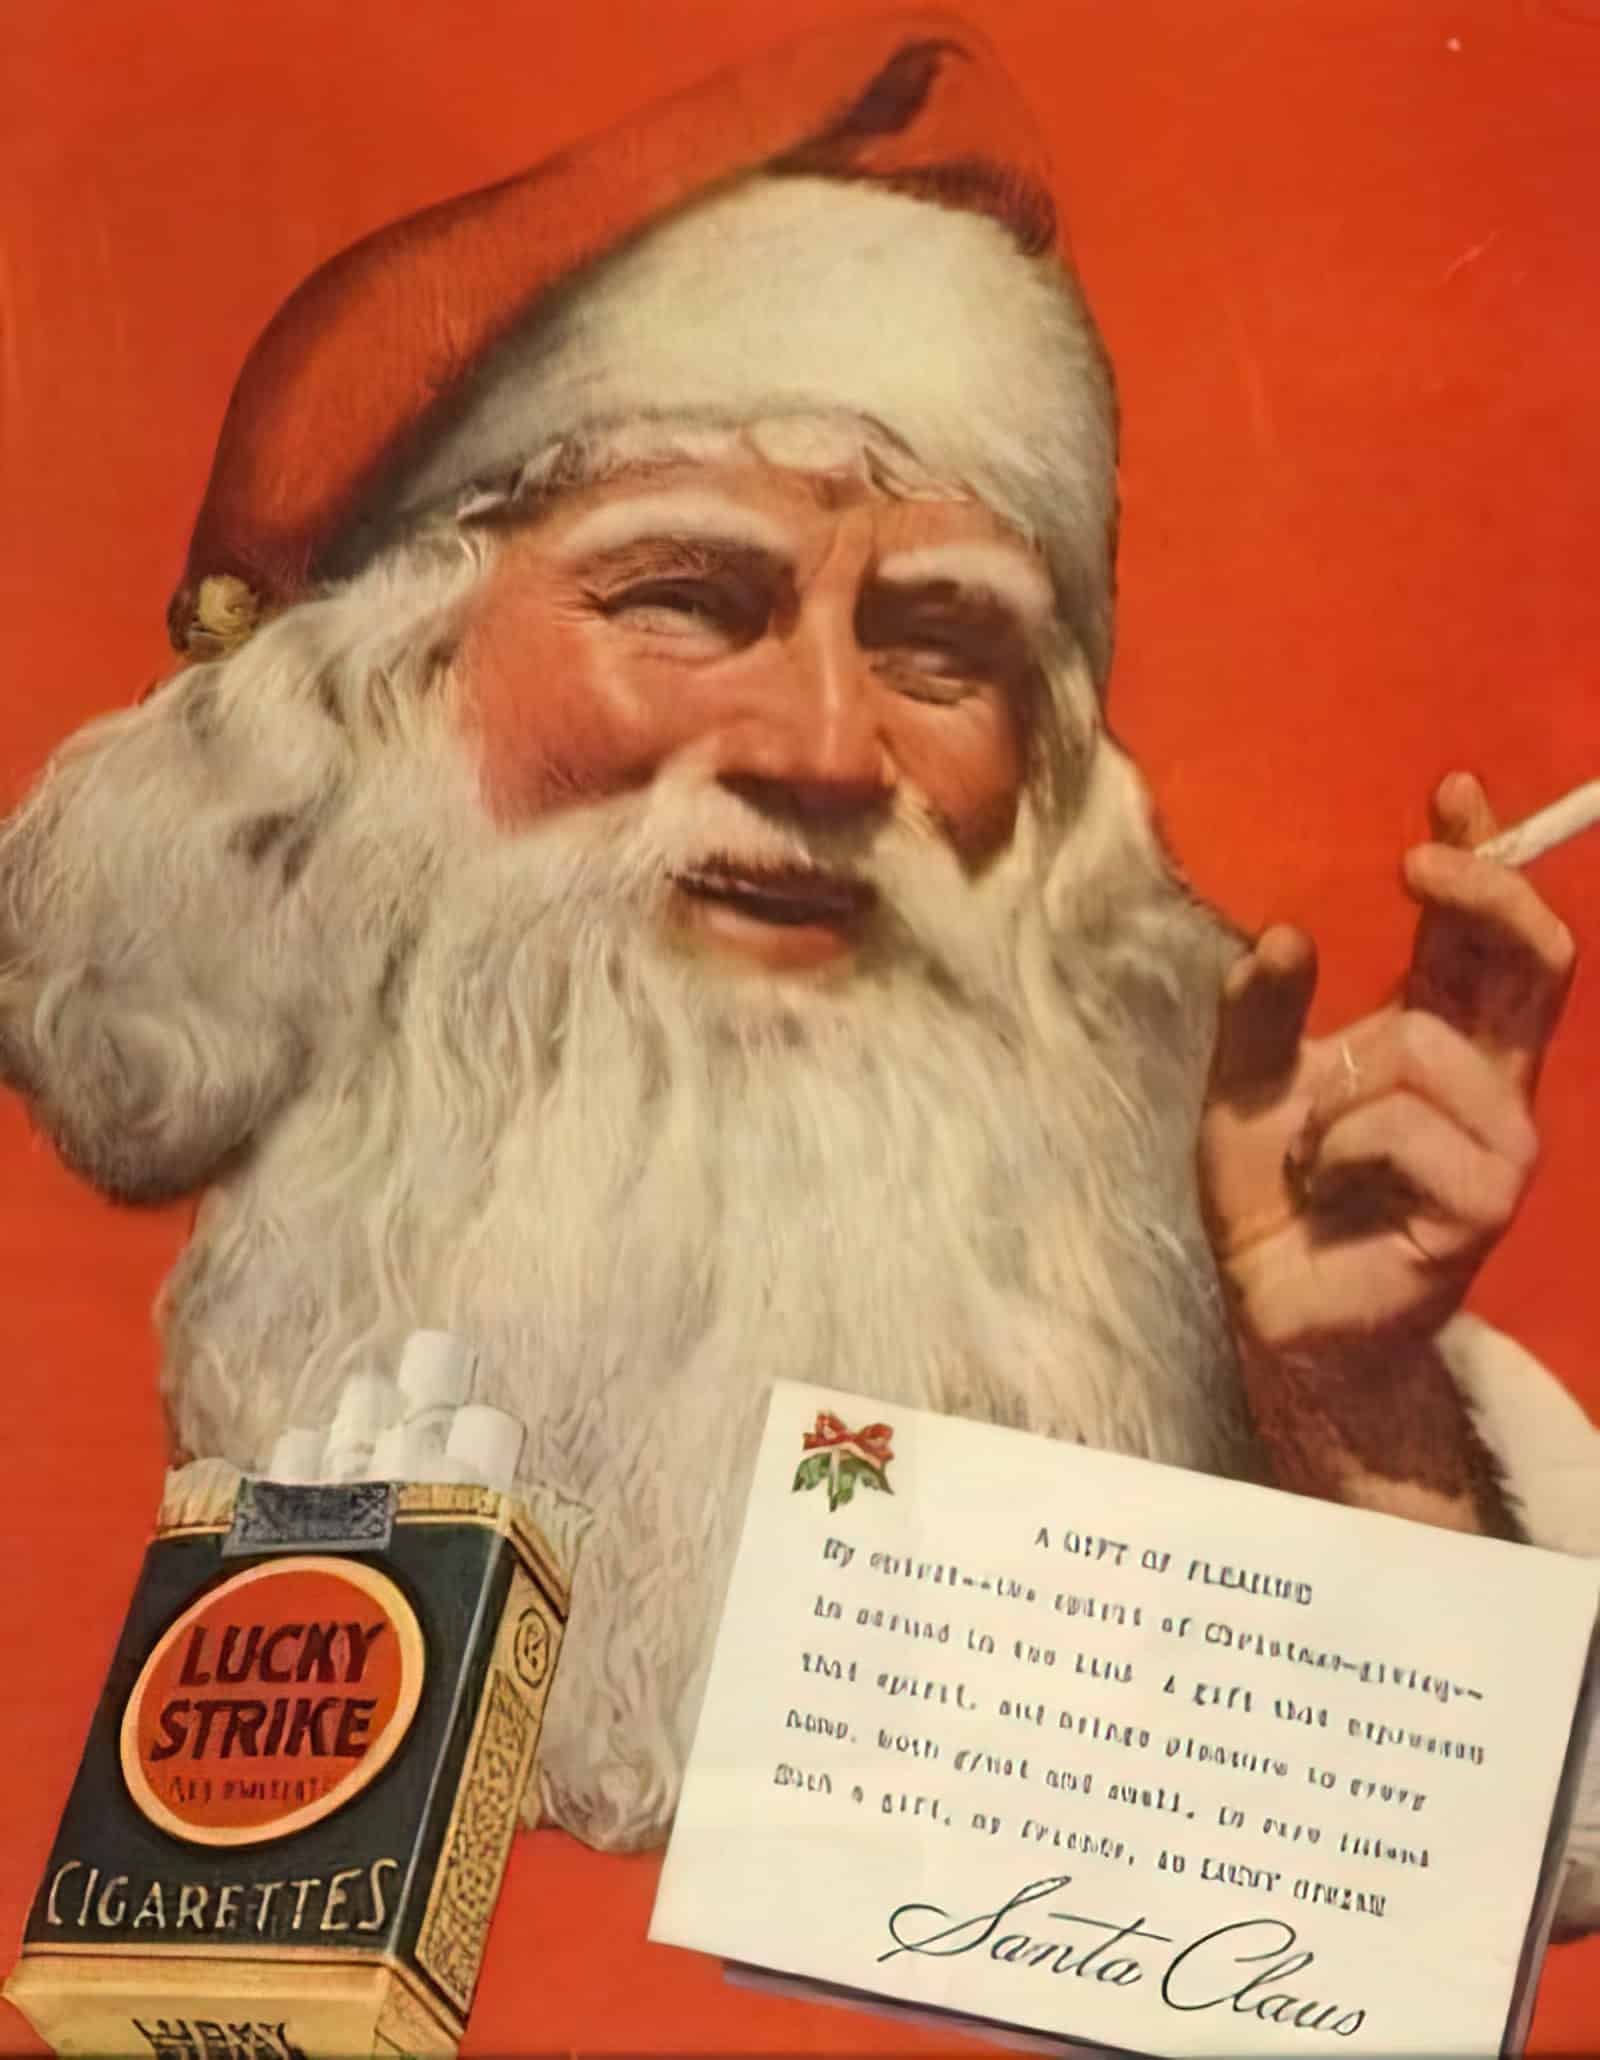 50s Cigarette Ad